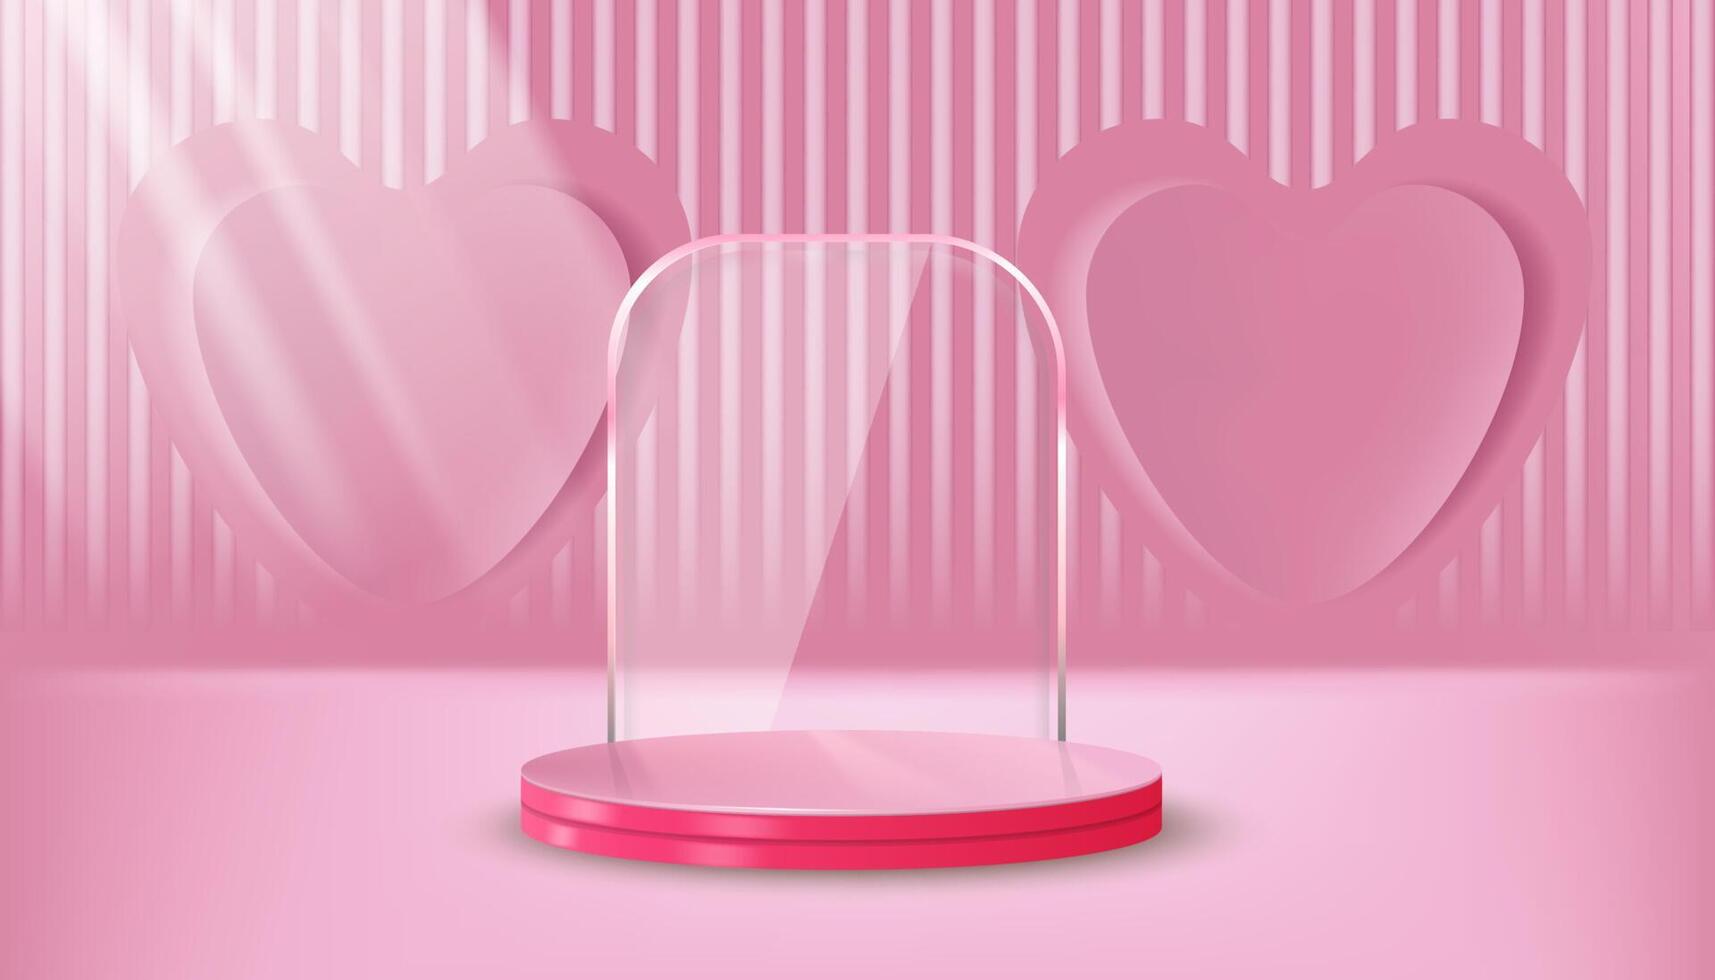 horizontal Rosa Linie Hintergrund mit Liebe, Pastell- Rosa mit Glas Spiegel und Licht Strahlen, backgorund Vektor 3d Zylinder gerendert zum Produkt Präsentation Studio